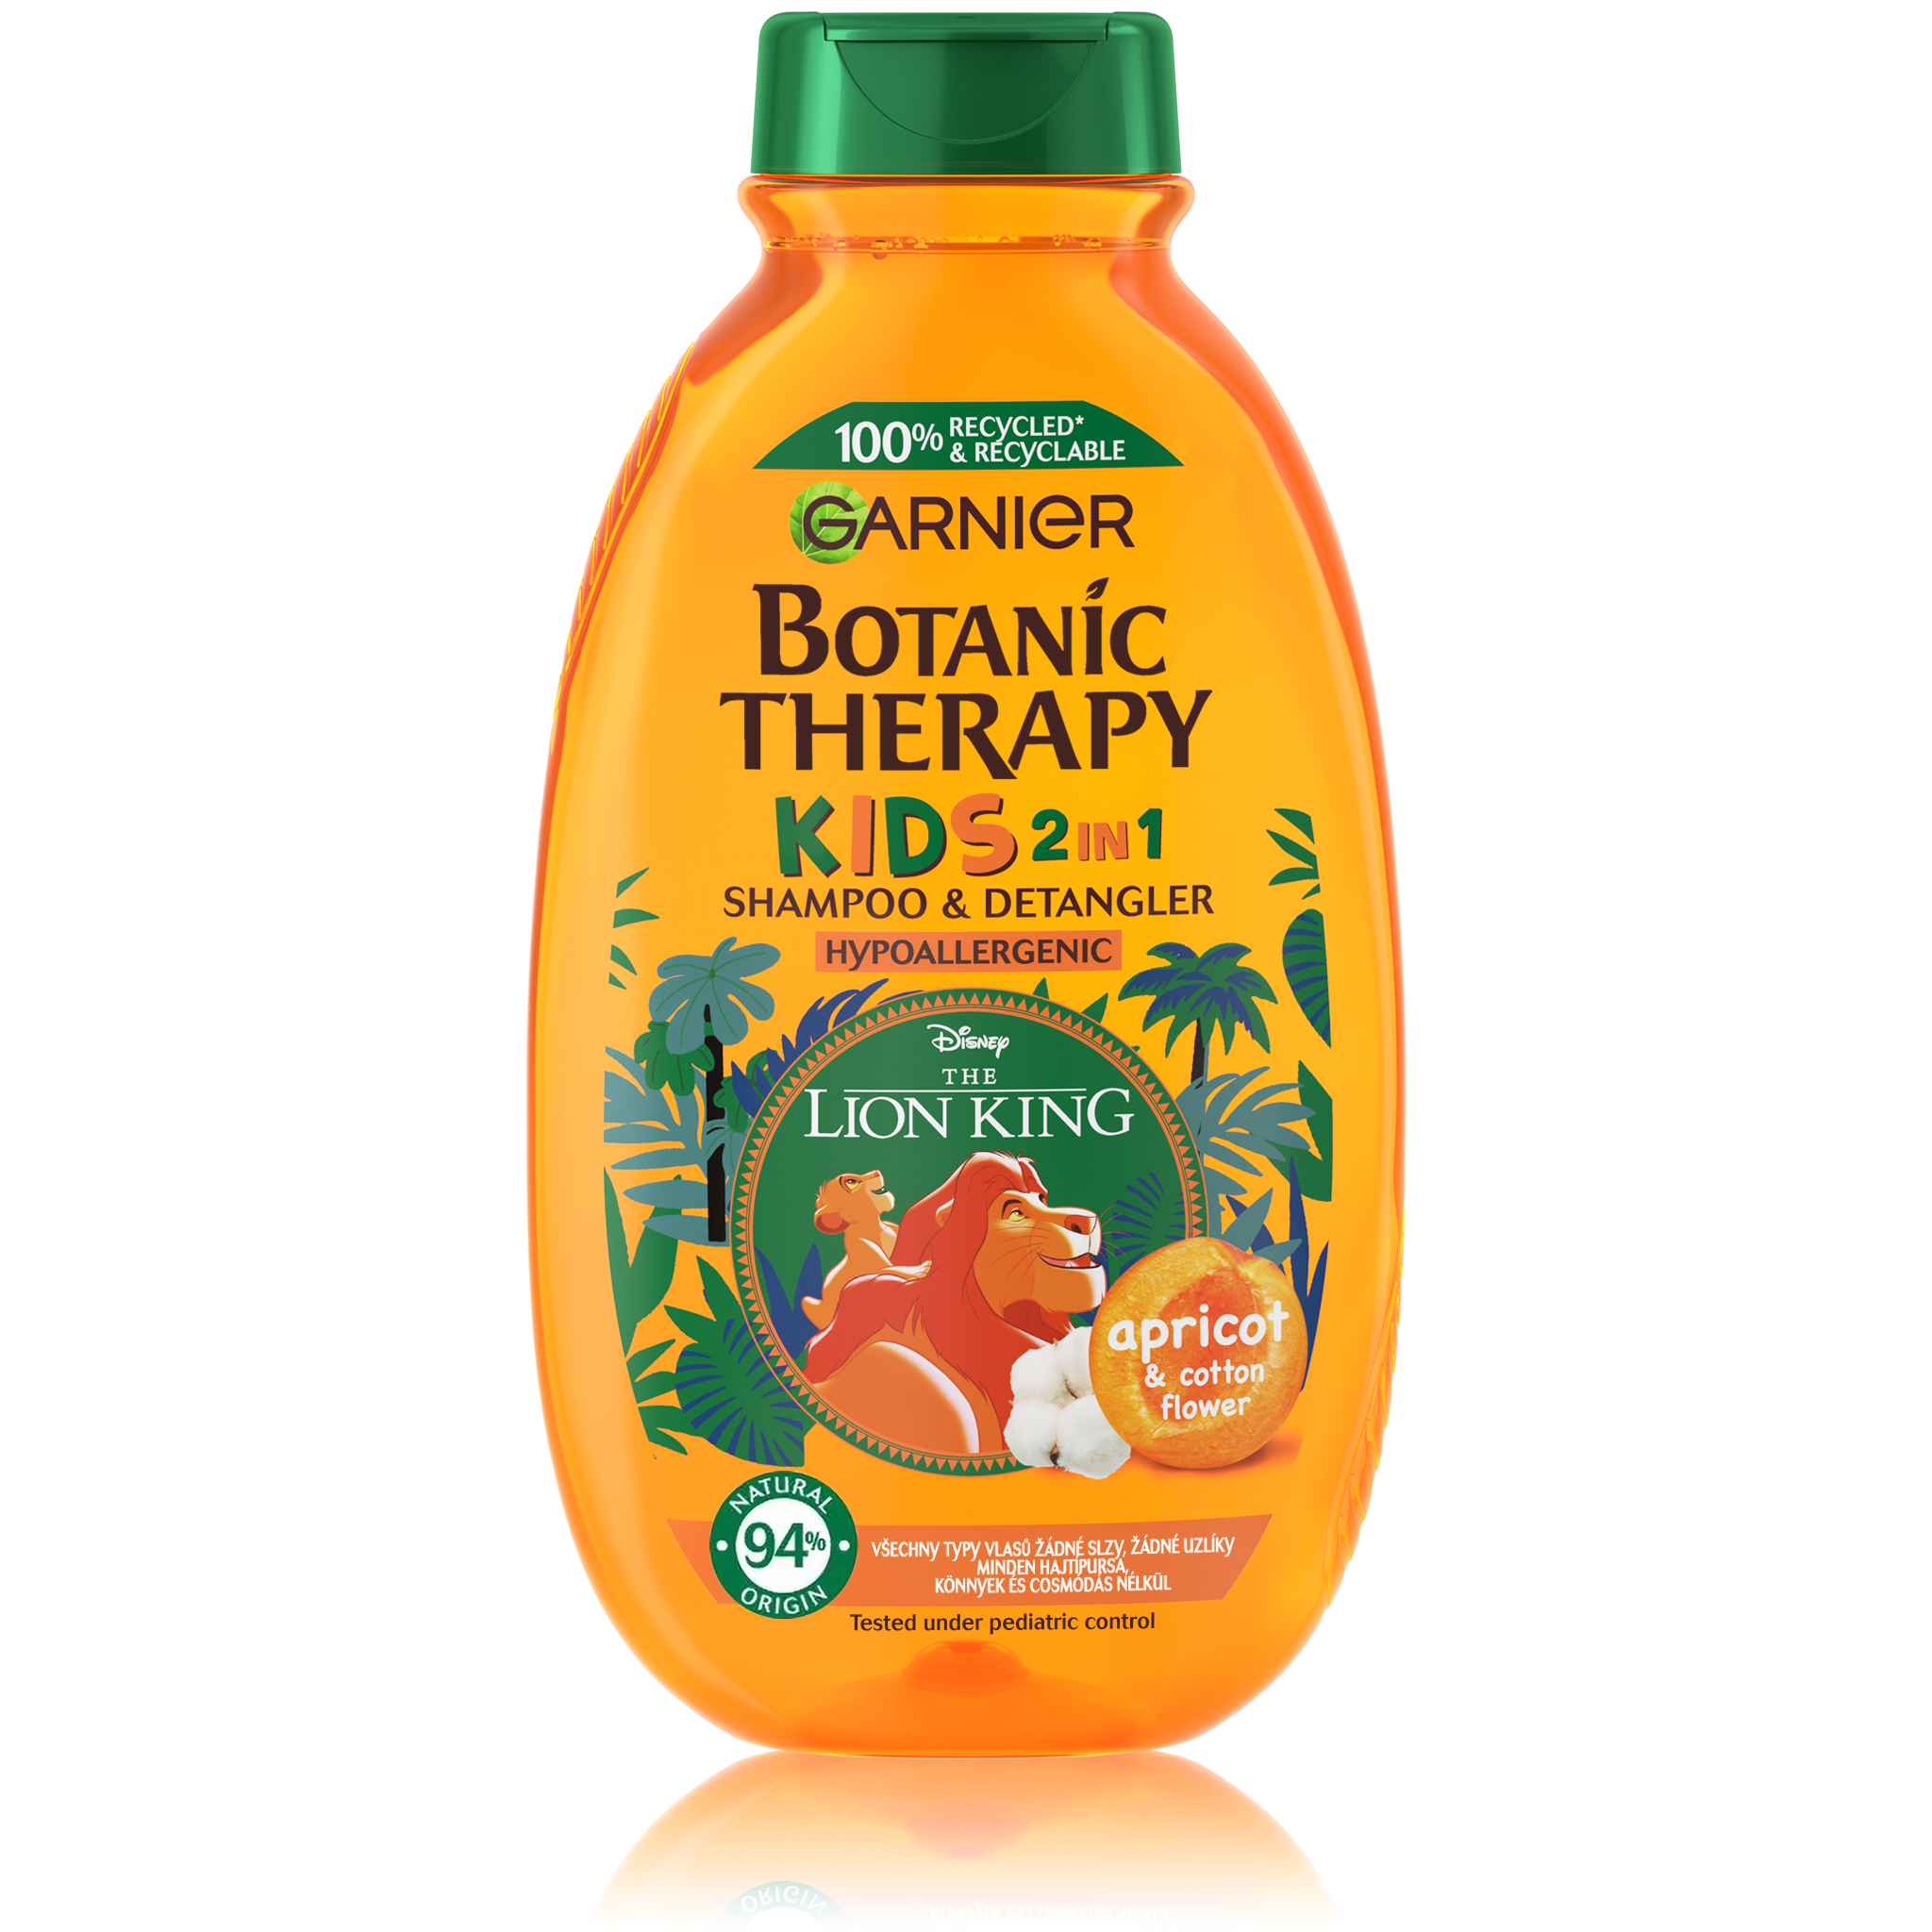 Garnier Botanic Therapy Disney Kids Leví kráľ marhuľa 2v1 šampónkondicionér 400 ml